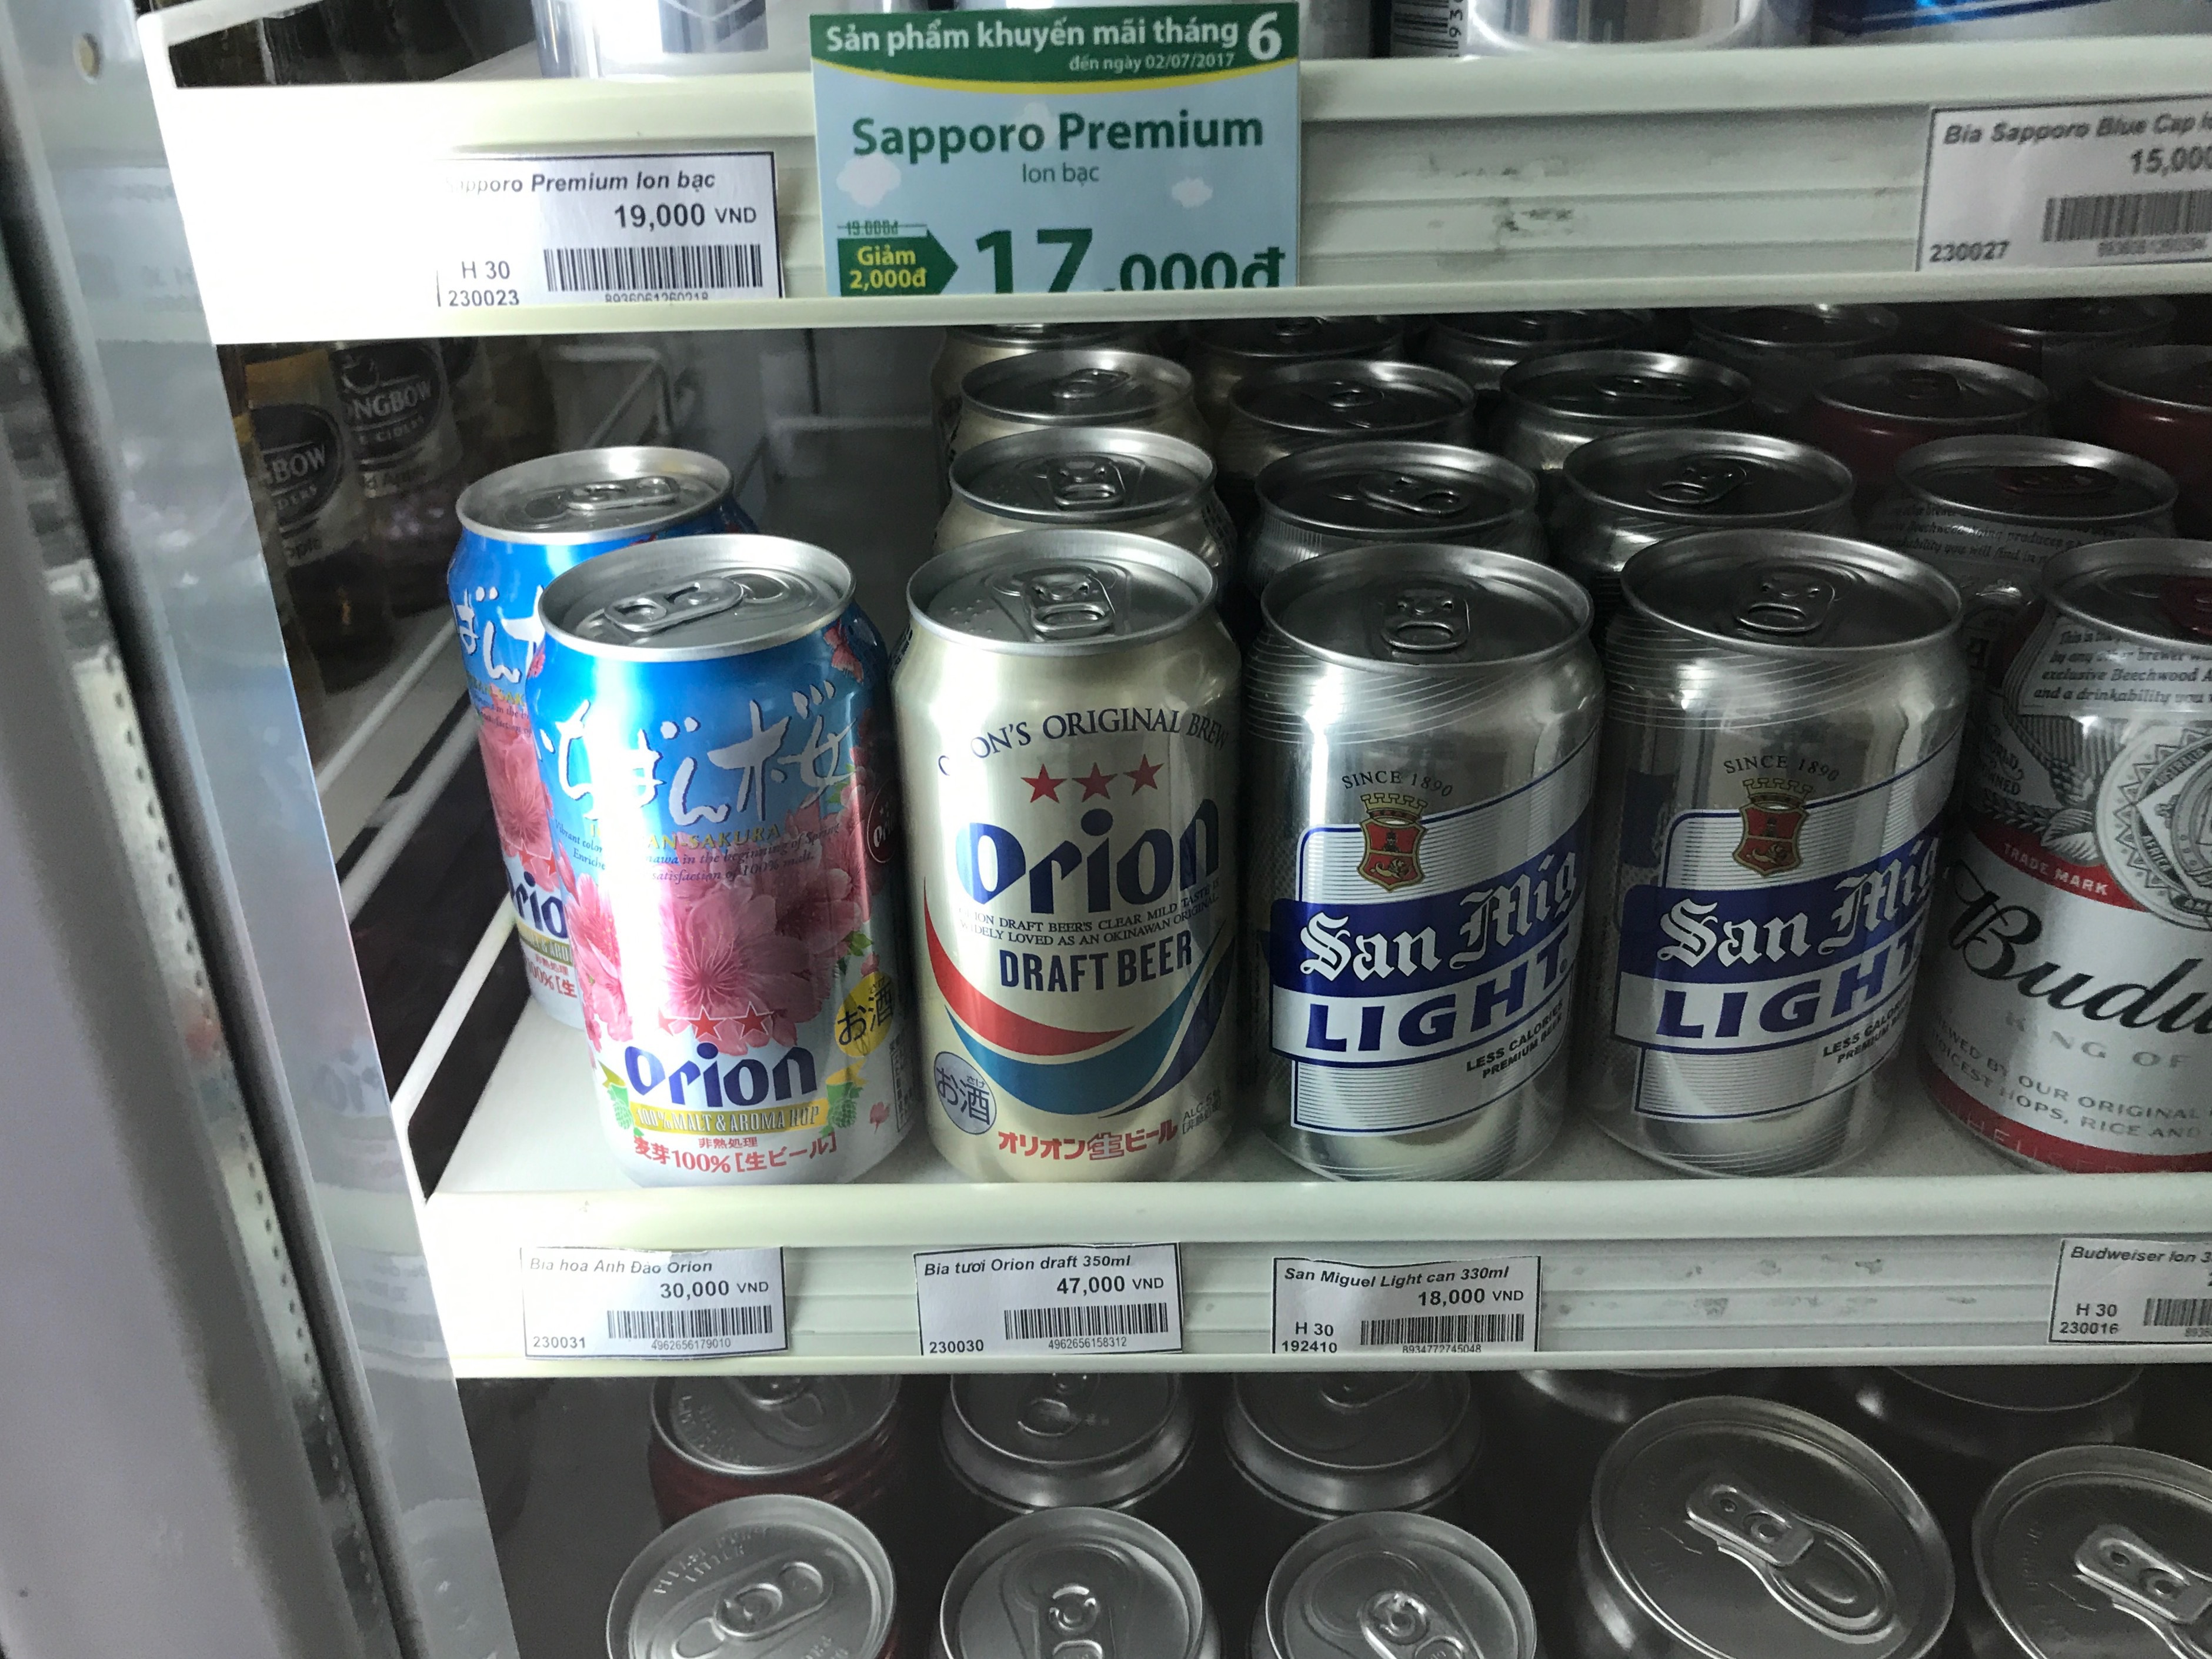 ベトナム ホーチミンのファミリーマートでオリオンビールを発見 ブンタウで奮闘する日本人のブログ